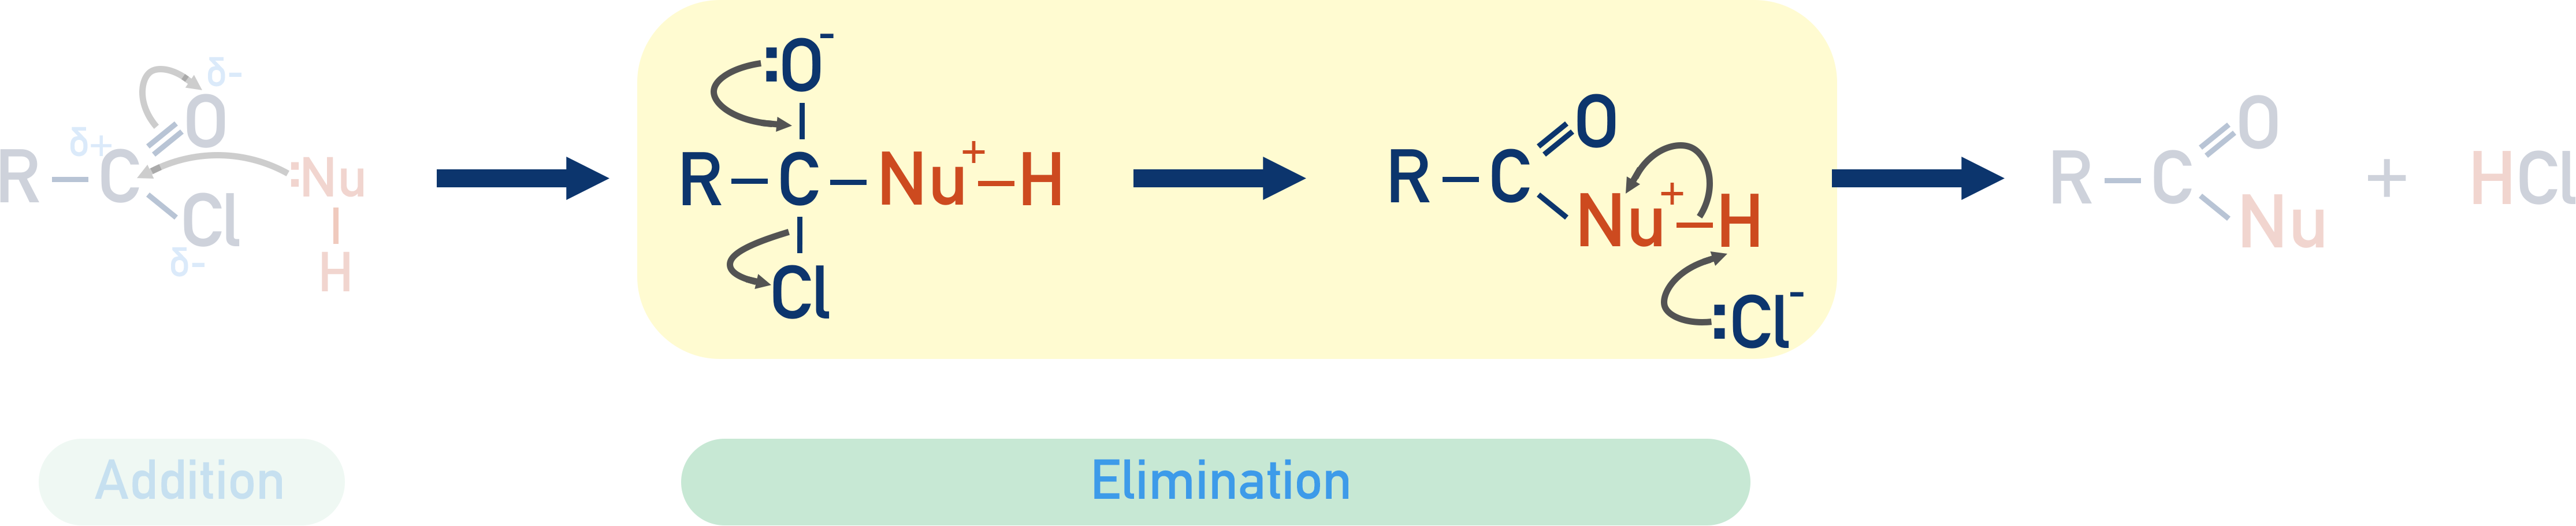 elimination step of nucleophilic addition-elimination mechanism acyl chloride